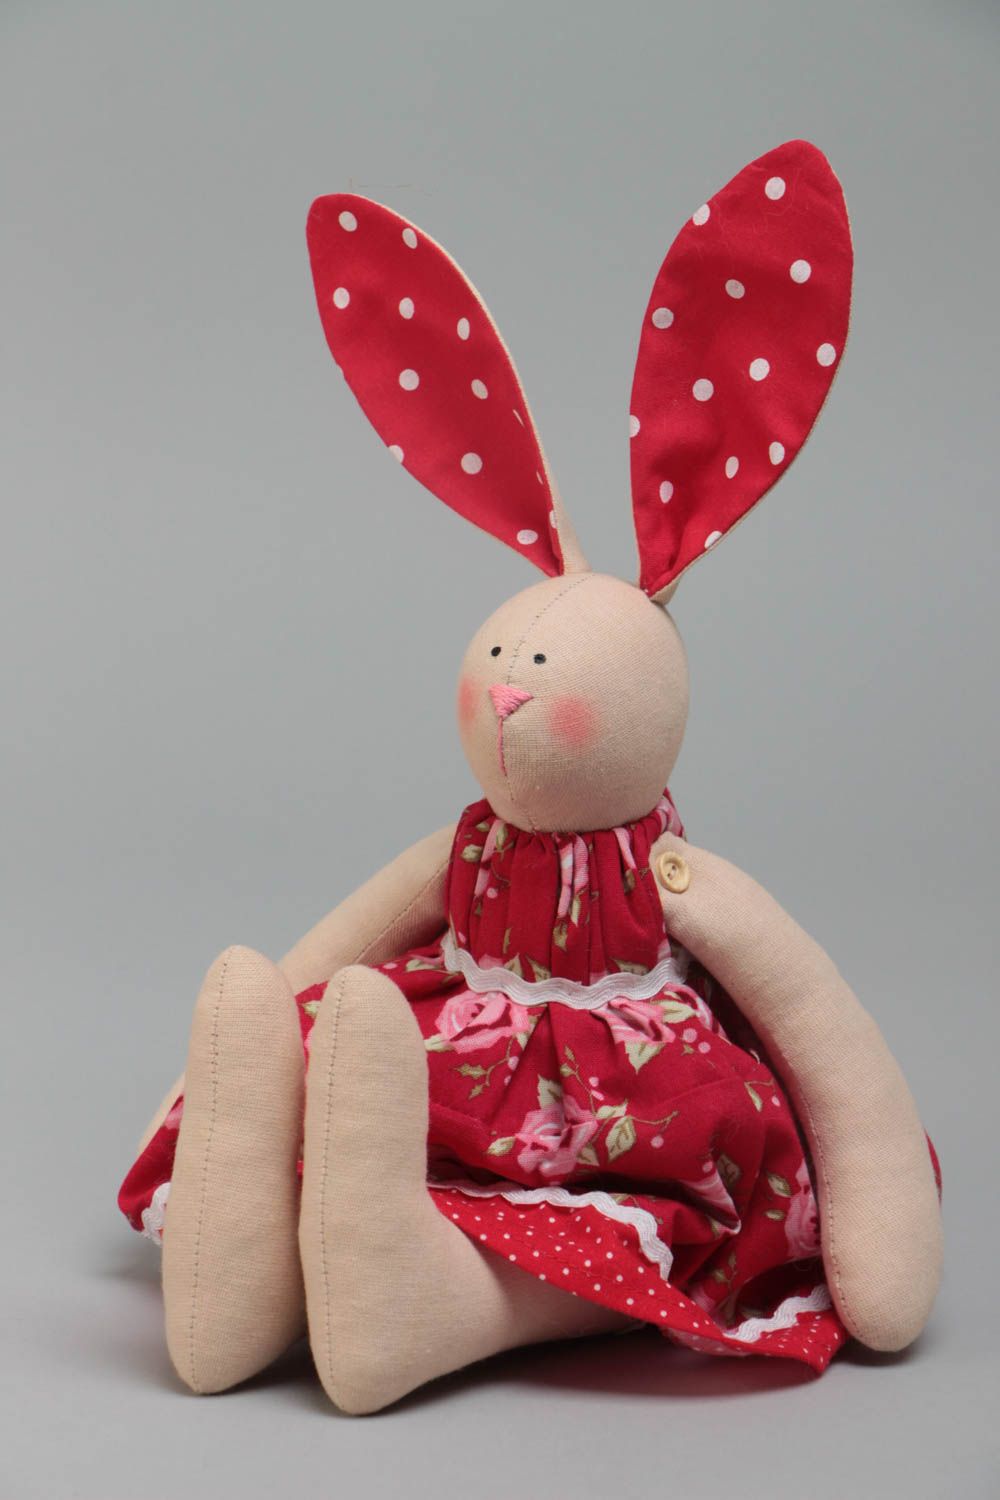 Тканевая игрушка в виде зайки в красном платье красивая небольшая ручной работы фото 2